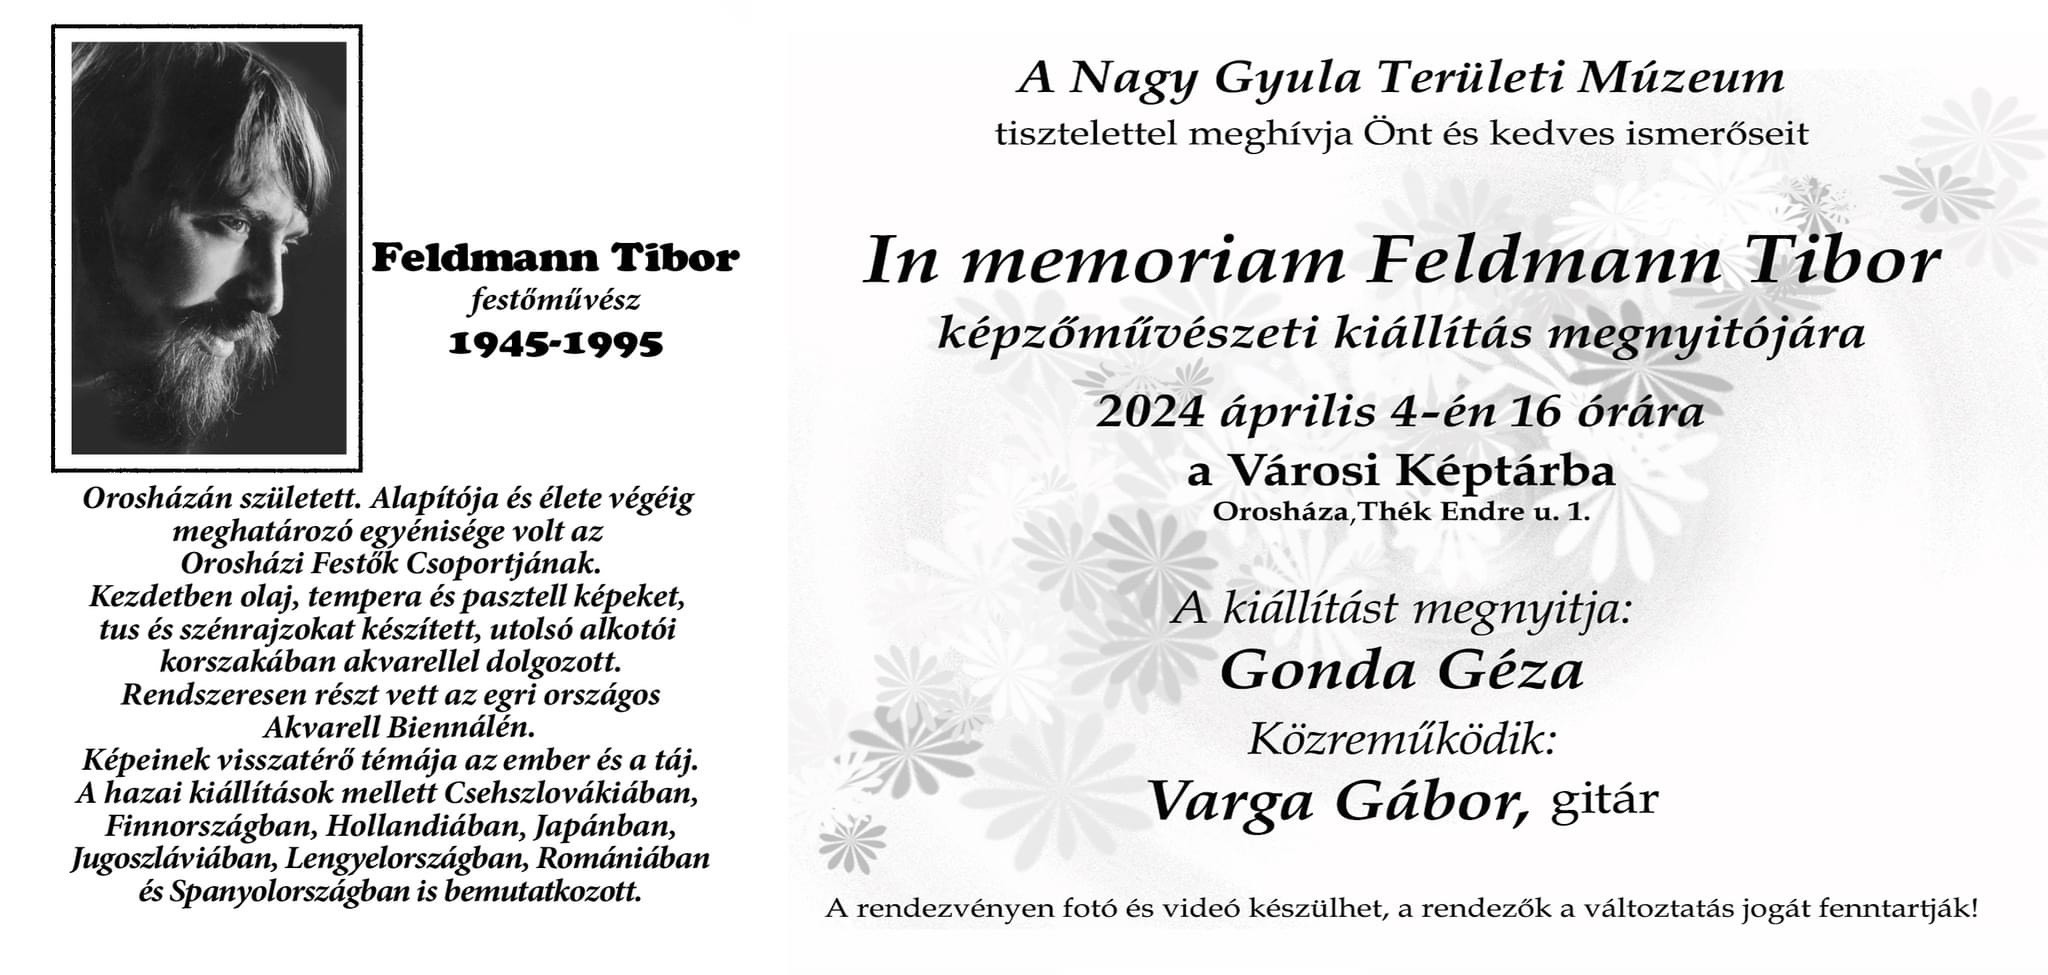 In memoriam Feldmann Tibor képzőművészeti kiállítás @ Városi Képtár